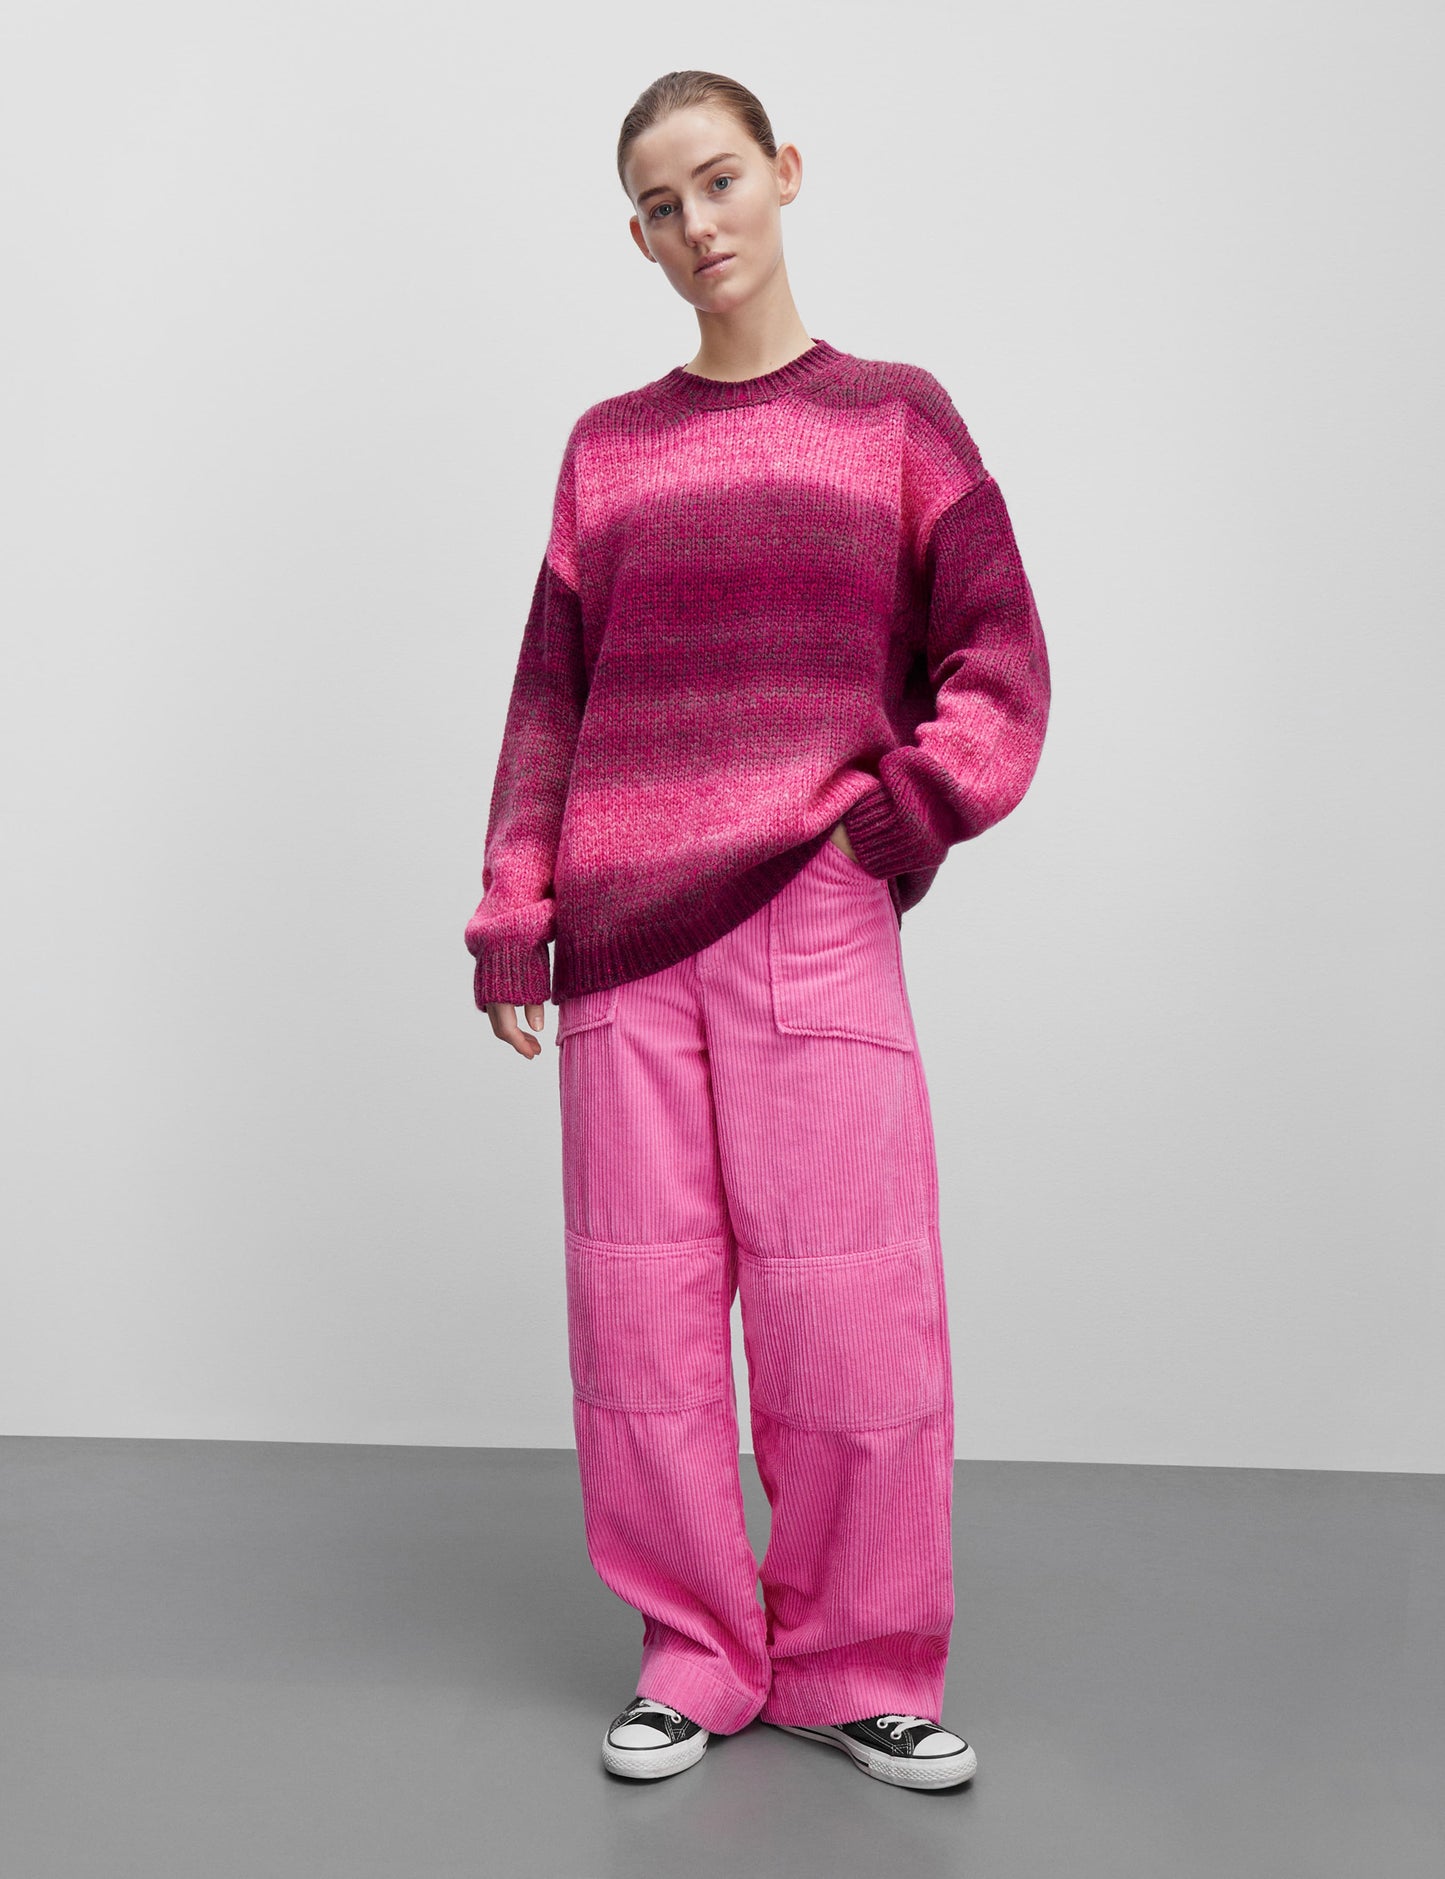 Shaded Lefty Sweater, Pink Glo Melange